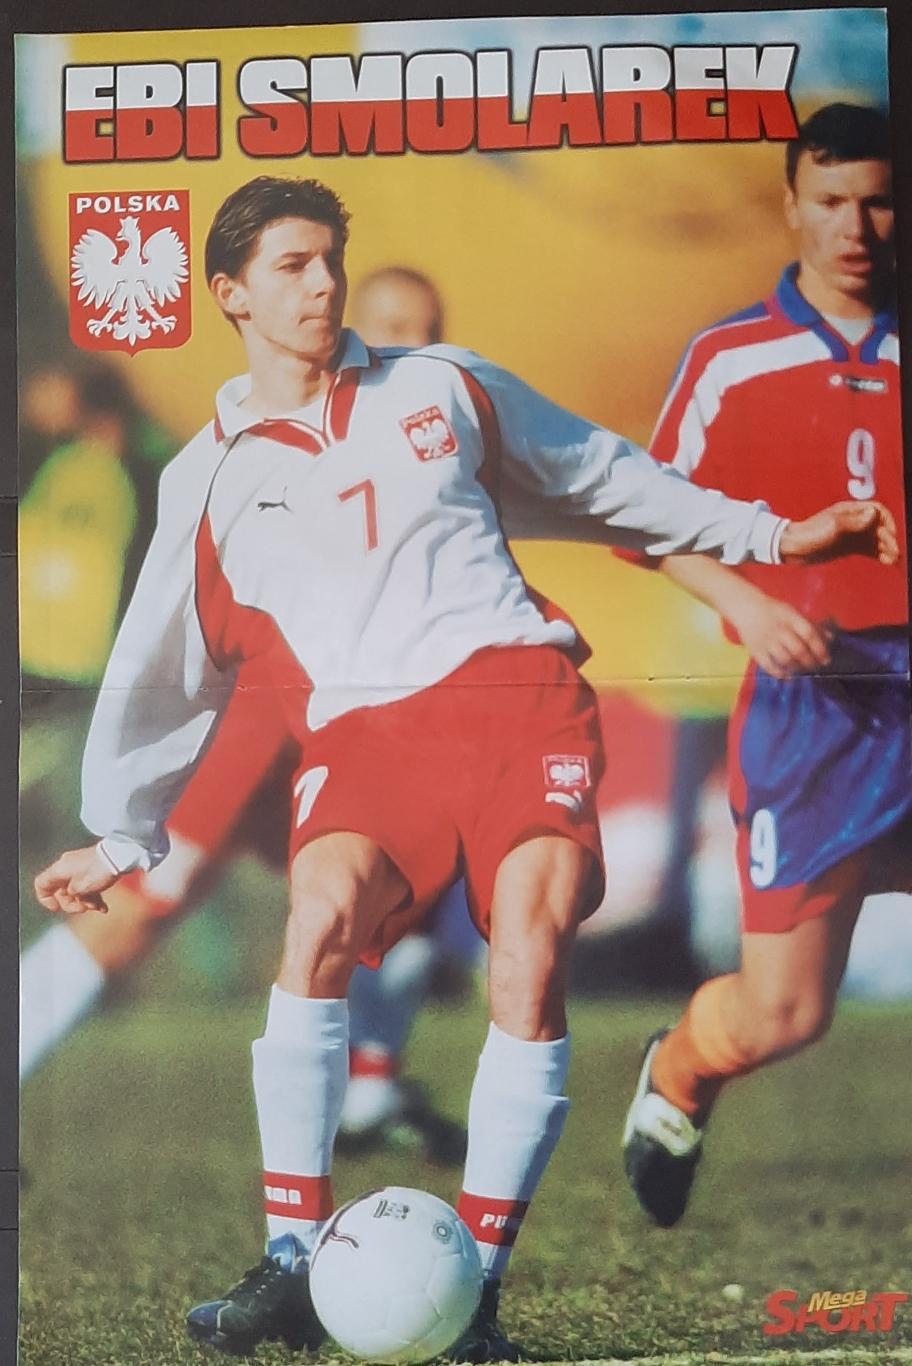 Постер двосторонній Мендьєта / Смолярек з журналу Mega Sport (Польща) 2001 1